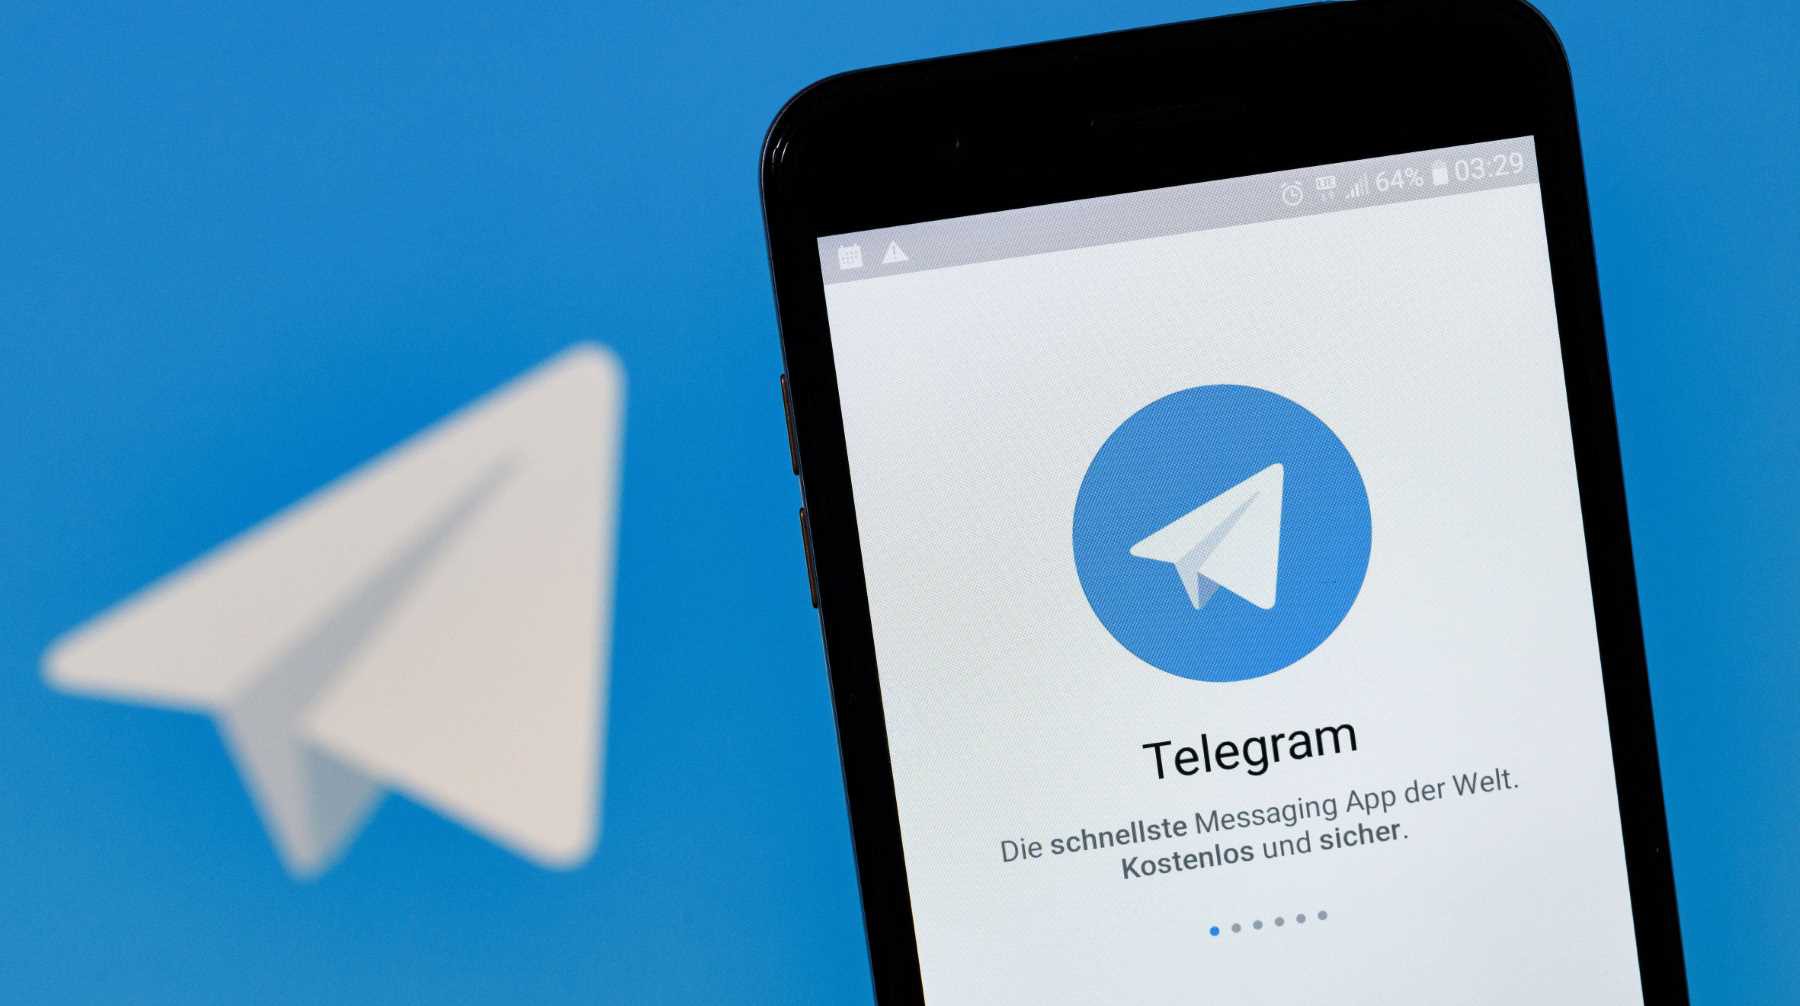 Dailystorm - Не подписывались, но пригласили: пользователи Telegram получили письма от штаба Навального